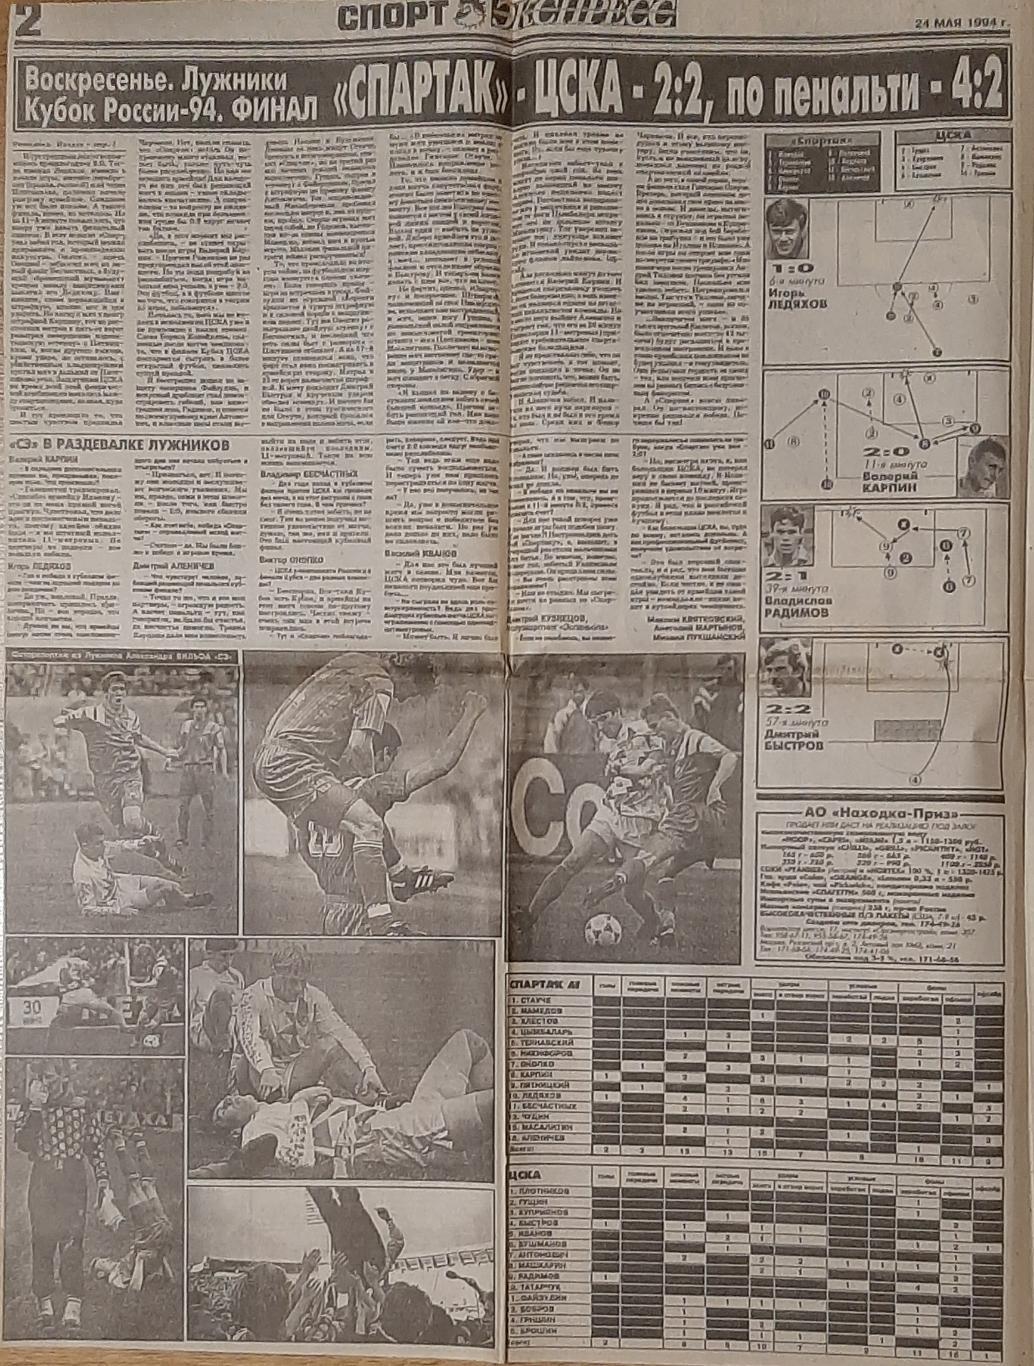 Вирізка з газети Спорт Экспресс #91 (24.05.1994) 1